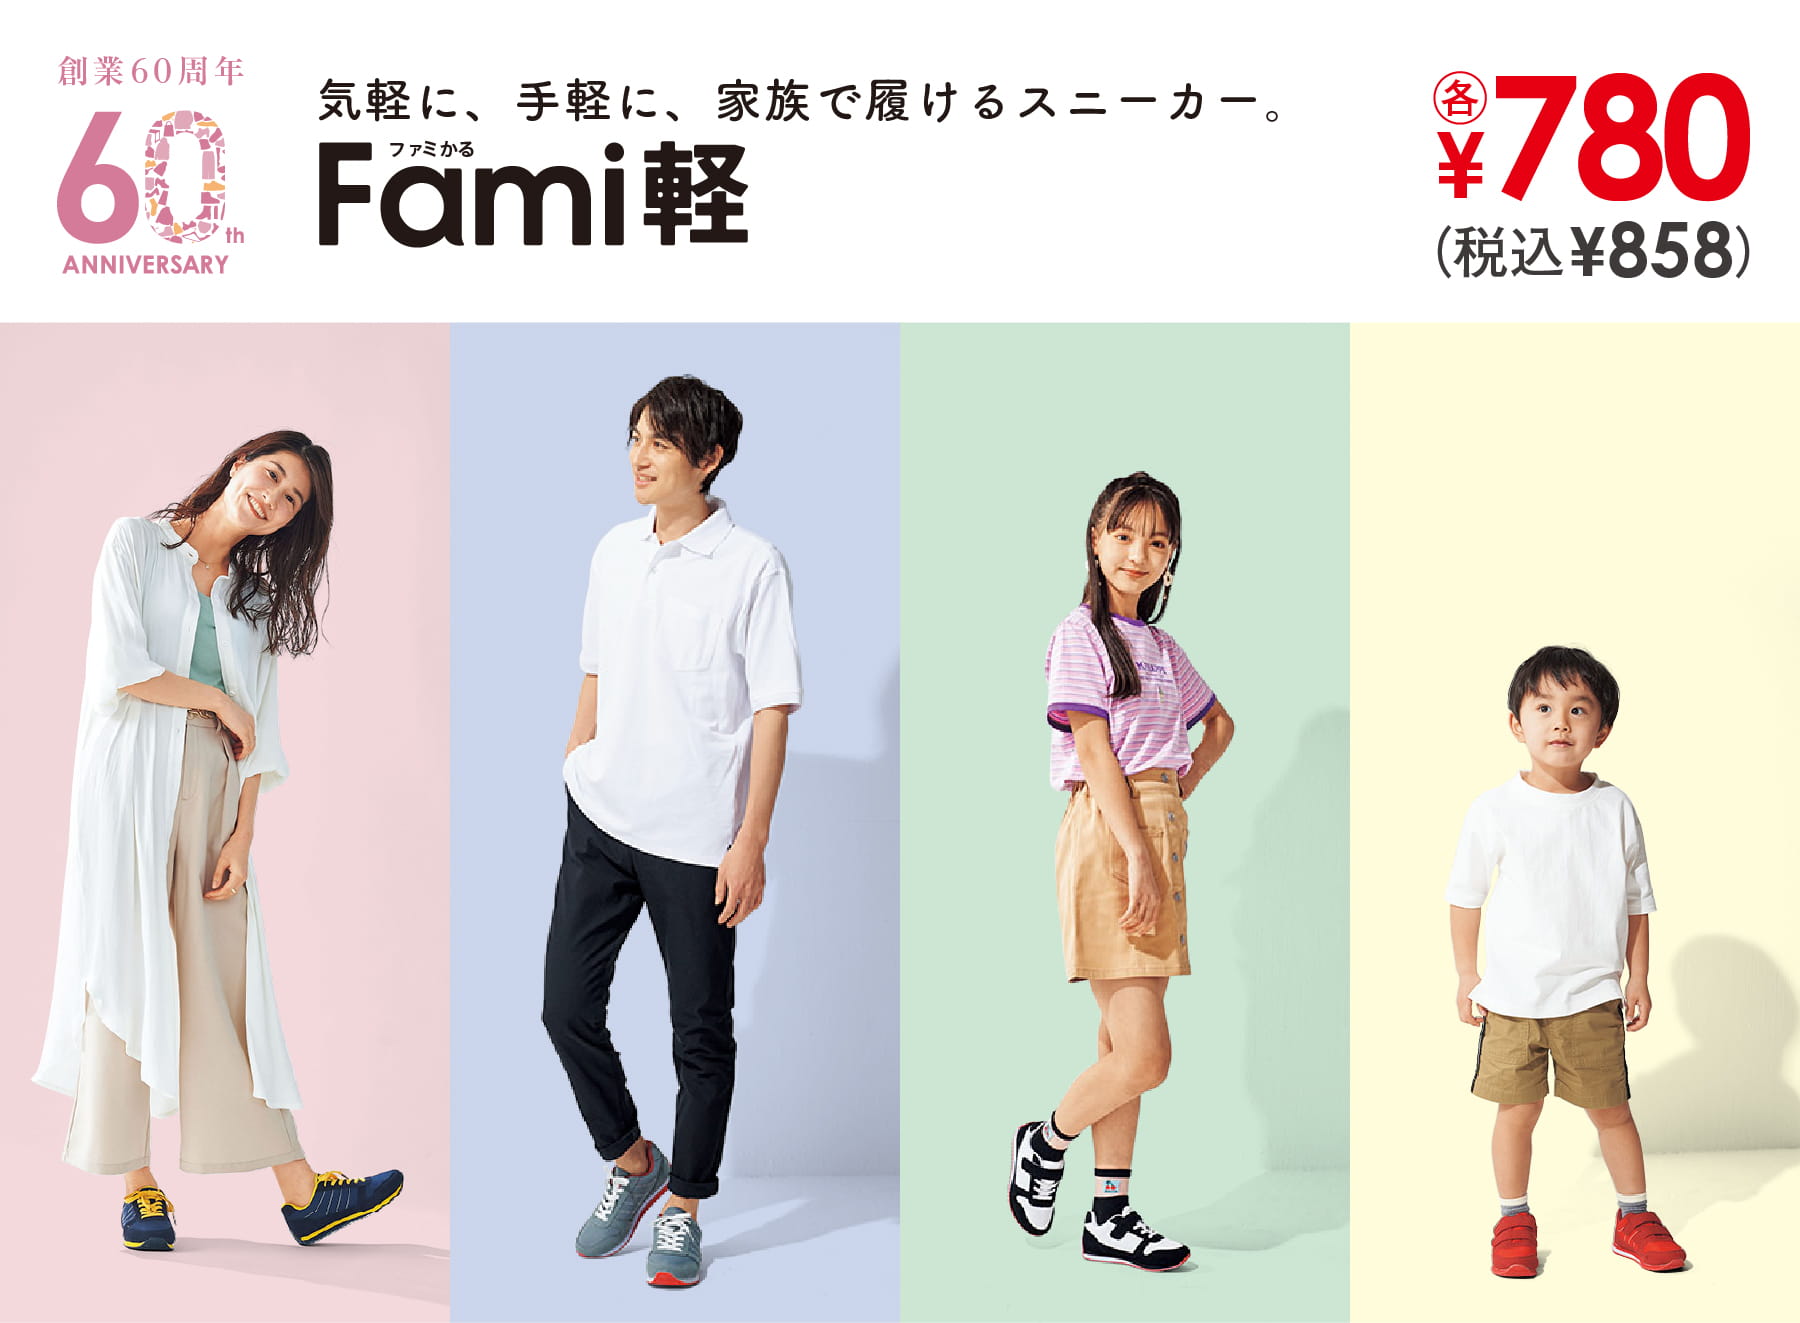 気軽に、手軽に、家族で履けるスニーカー。Fami軽(ファミかる)